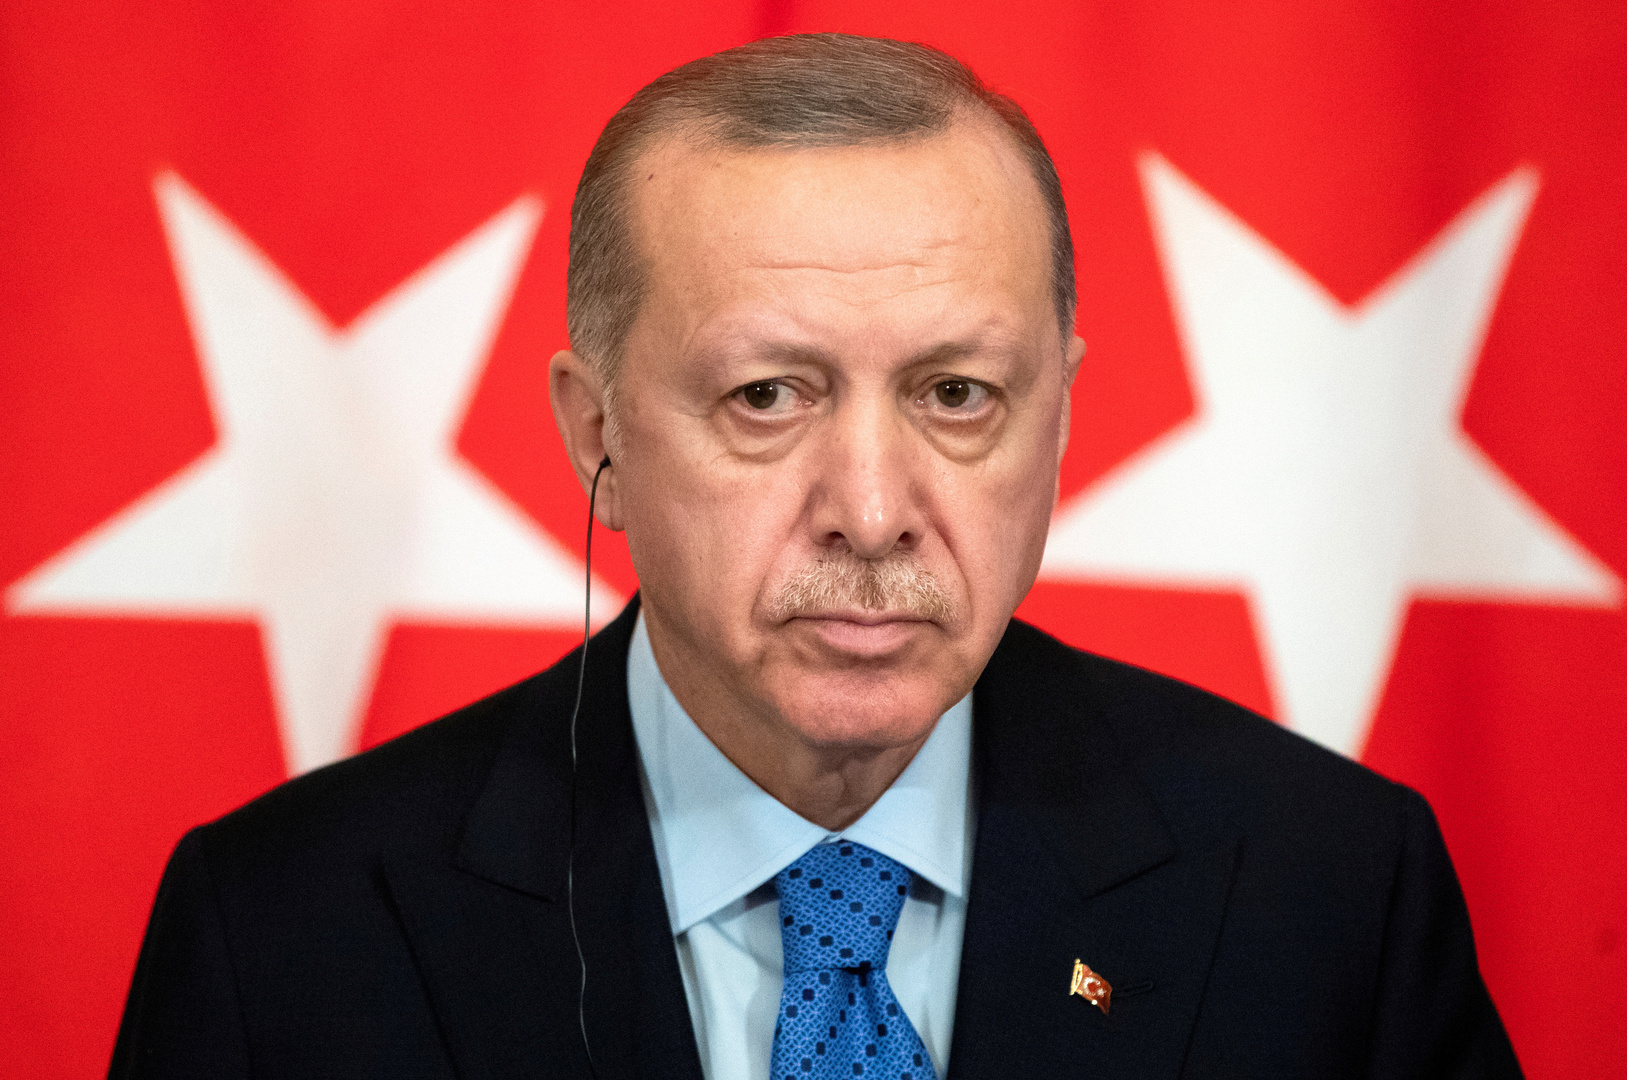 أردوغان: سنواصل كفاحنا لغاية تأسيس دولة فلسطينية مستقلة عاصمتها القدس الشرقية